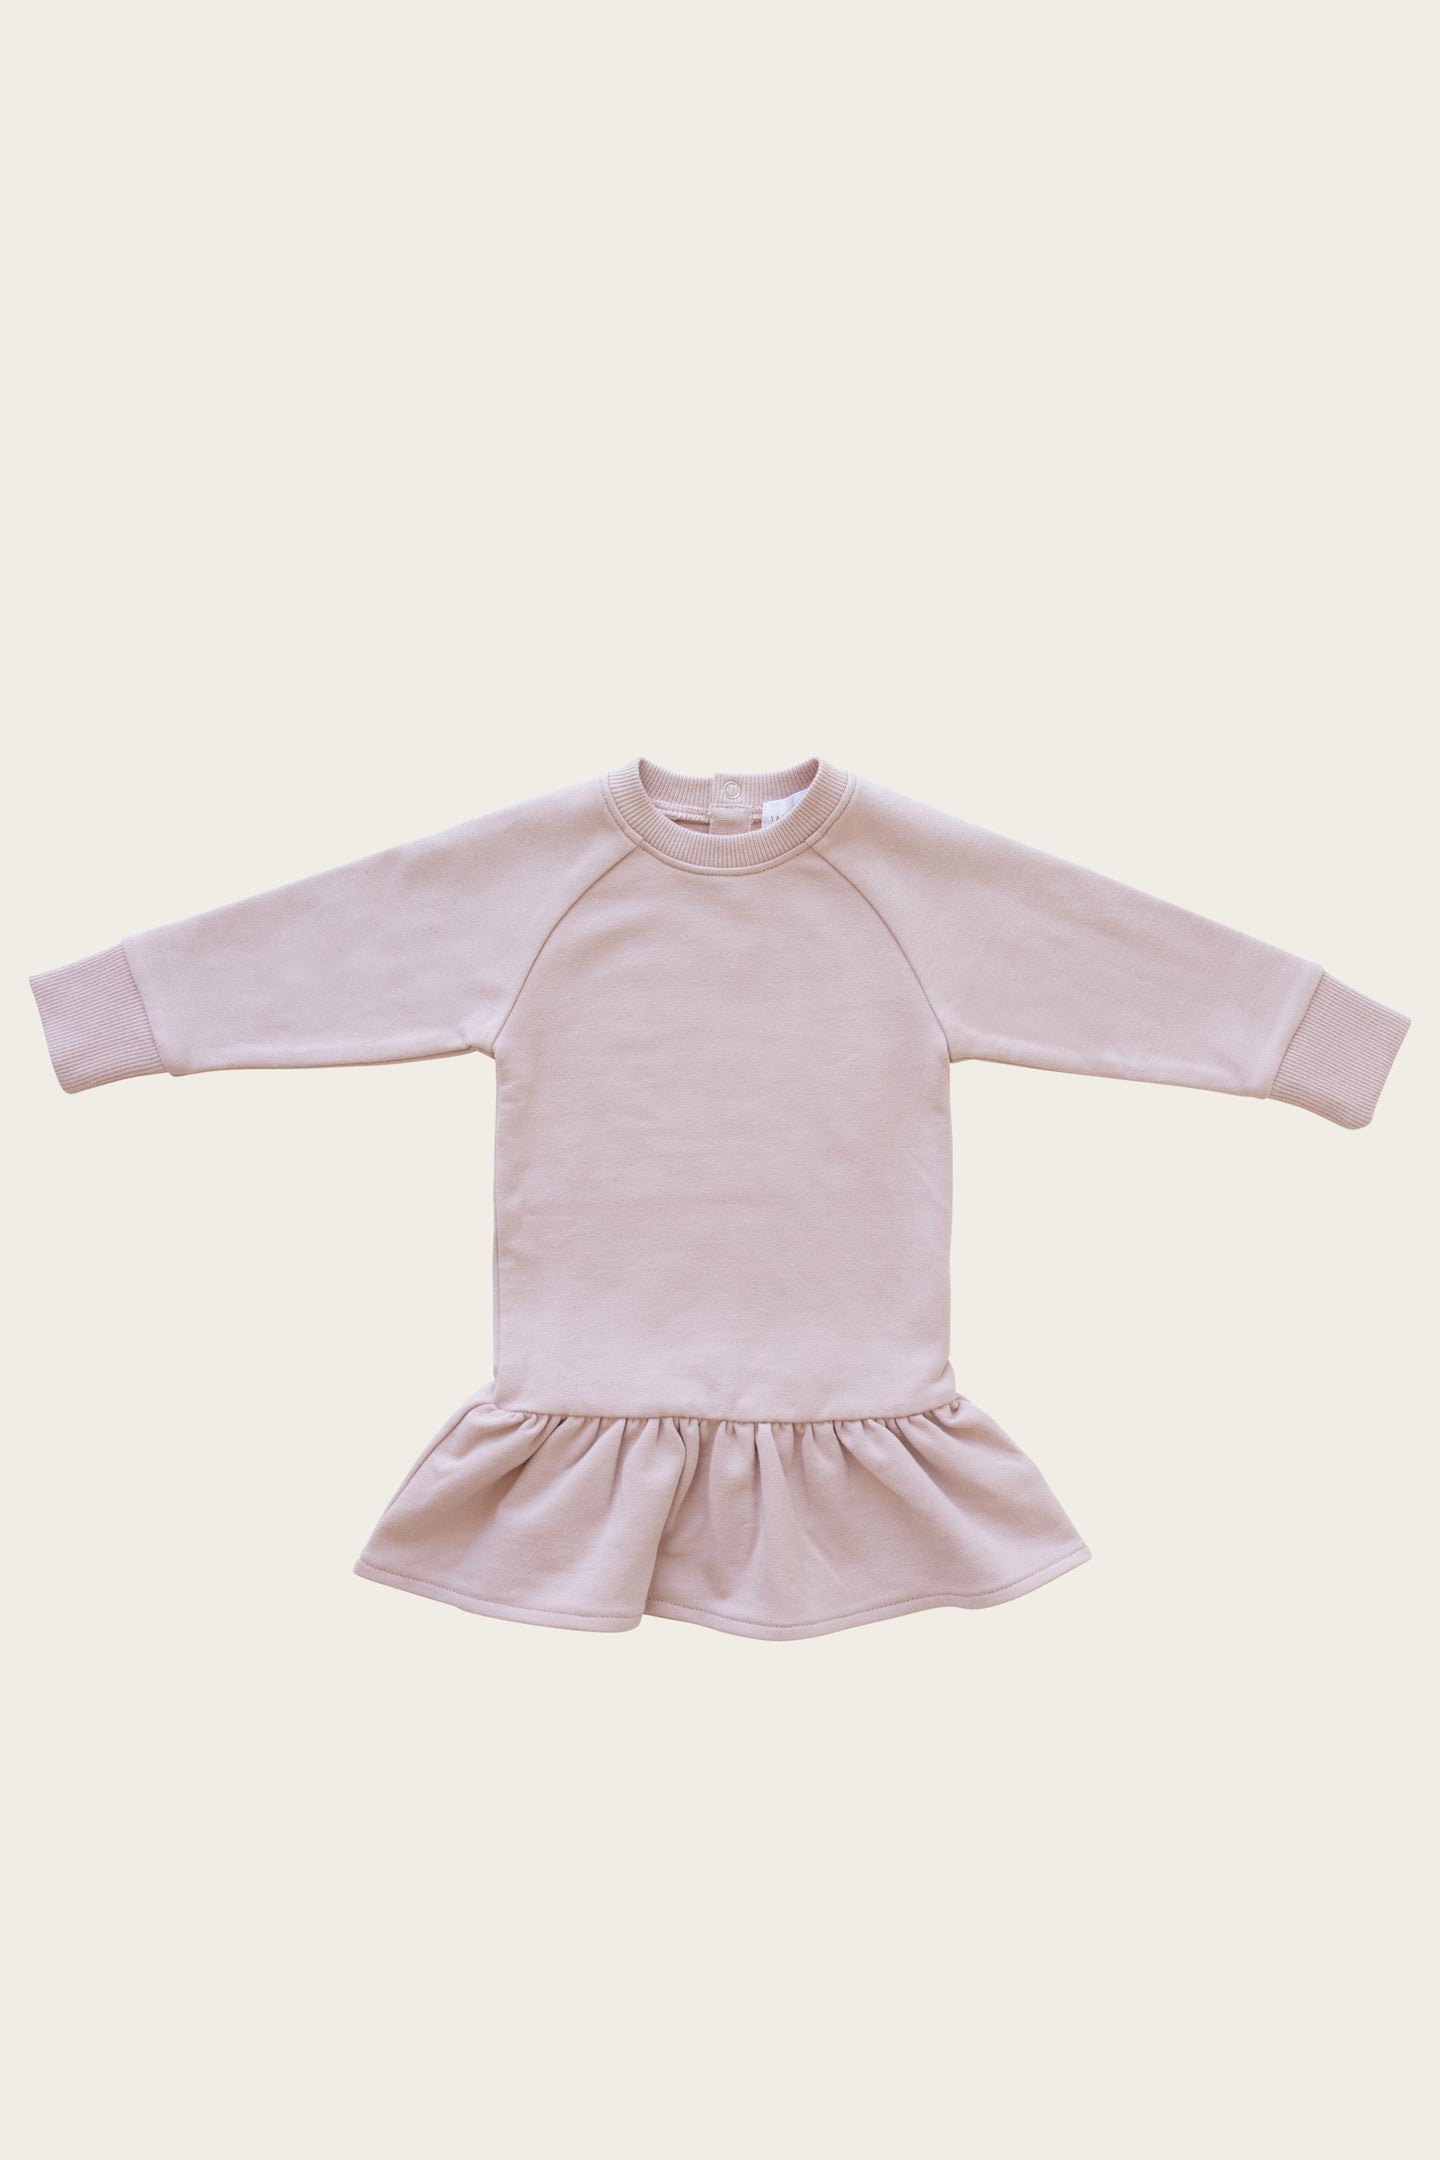 Jamie Kay - Maisie Sweater Dress - Amelie